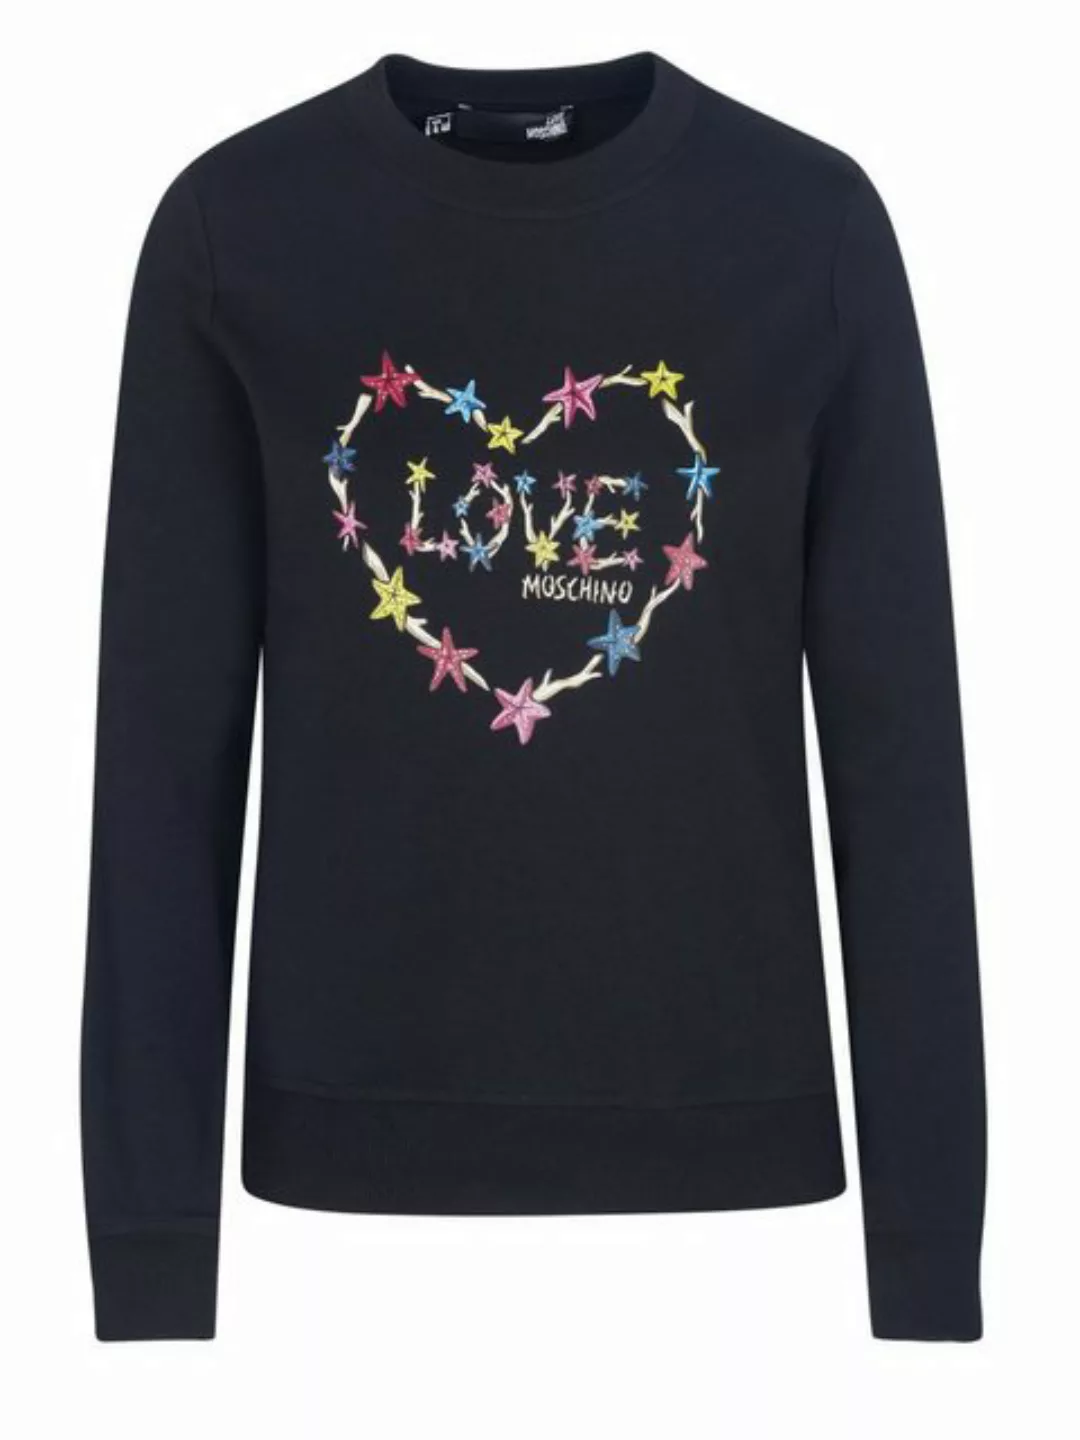 LOVE MOSCHINO Sweater Love Moschino Pullover schwarz günstig online kaufen